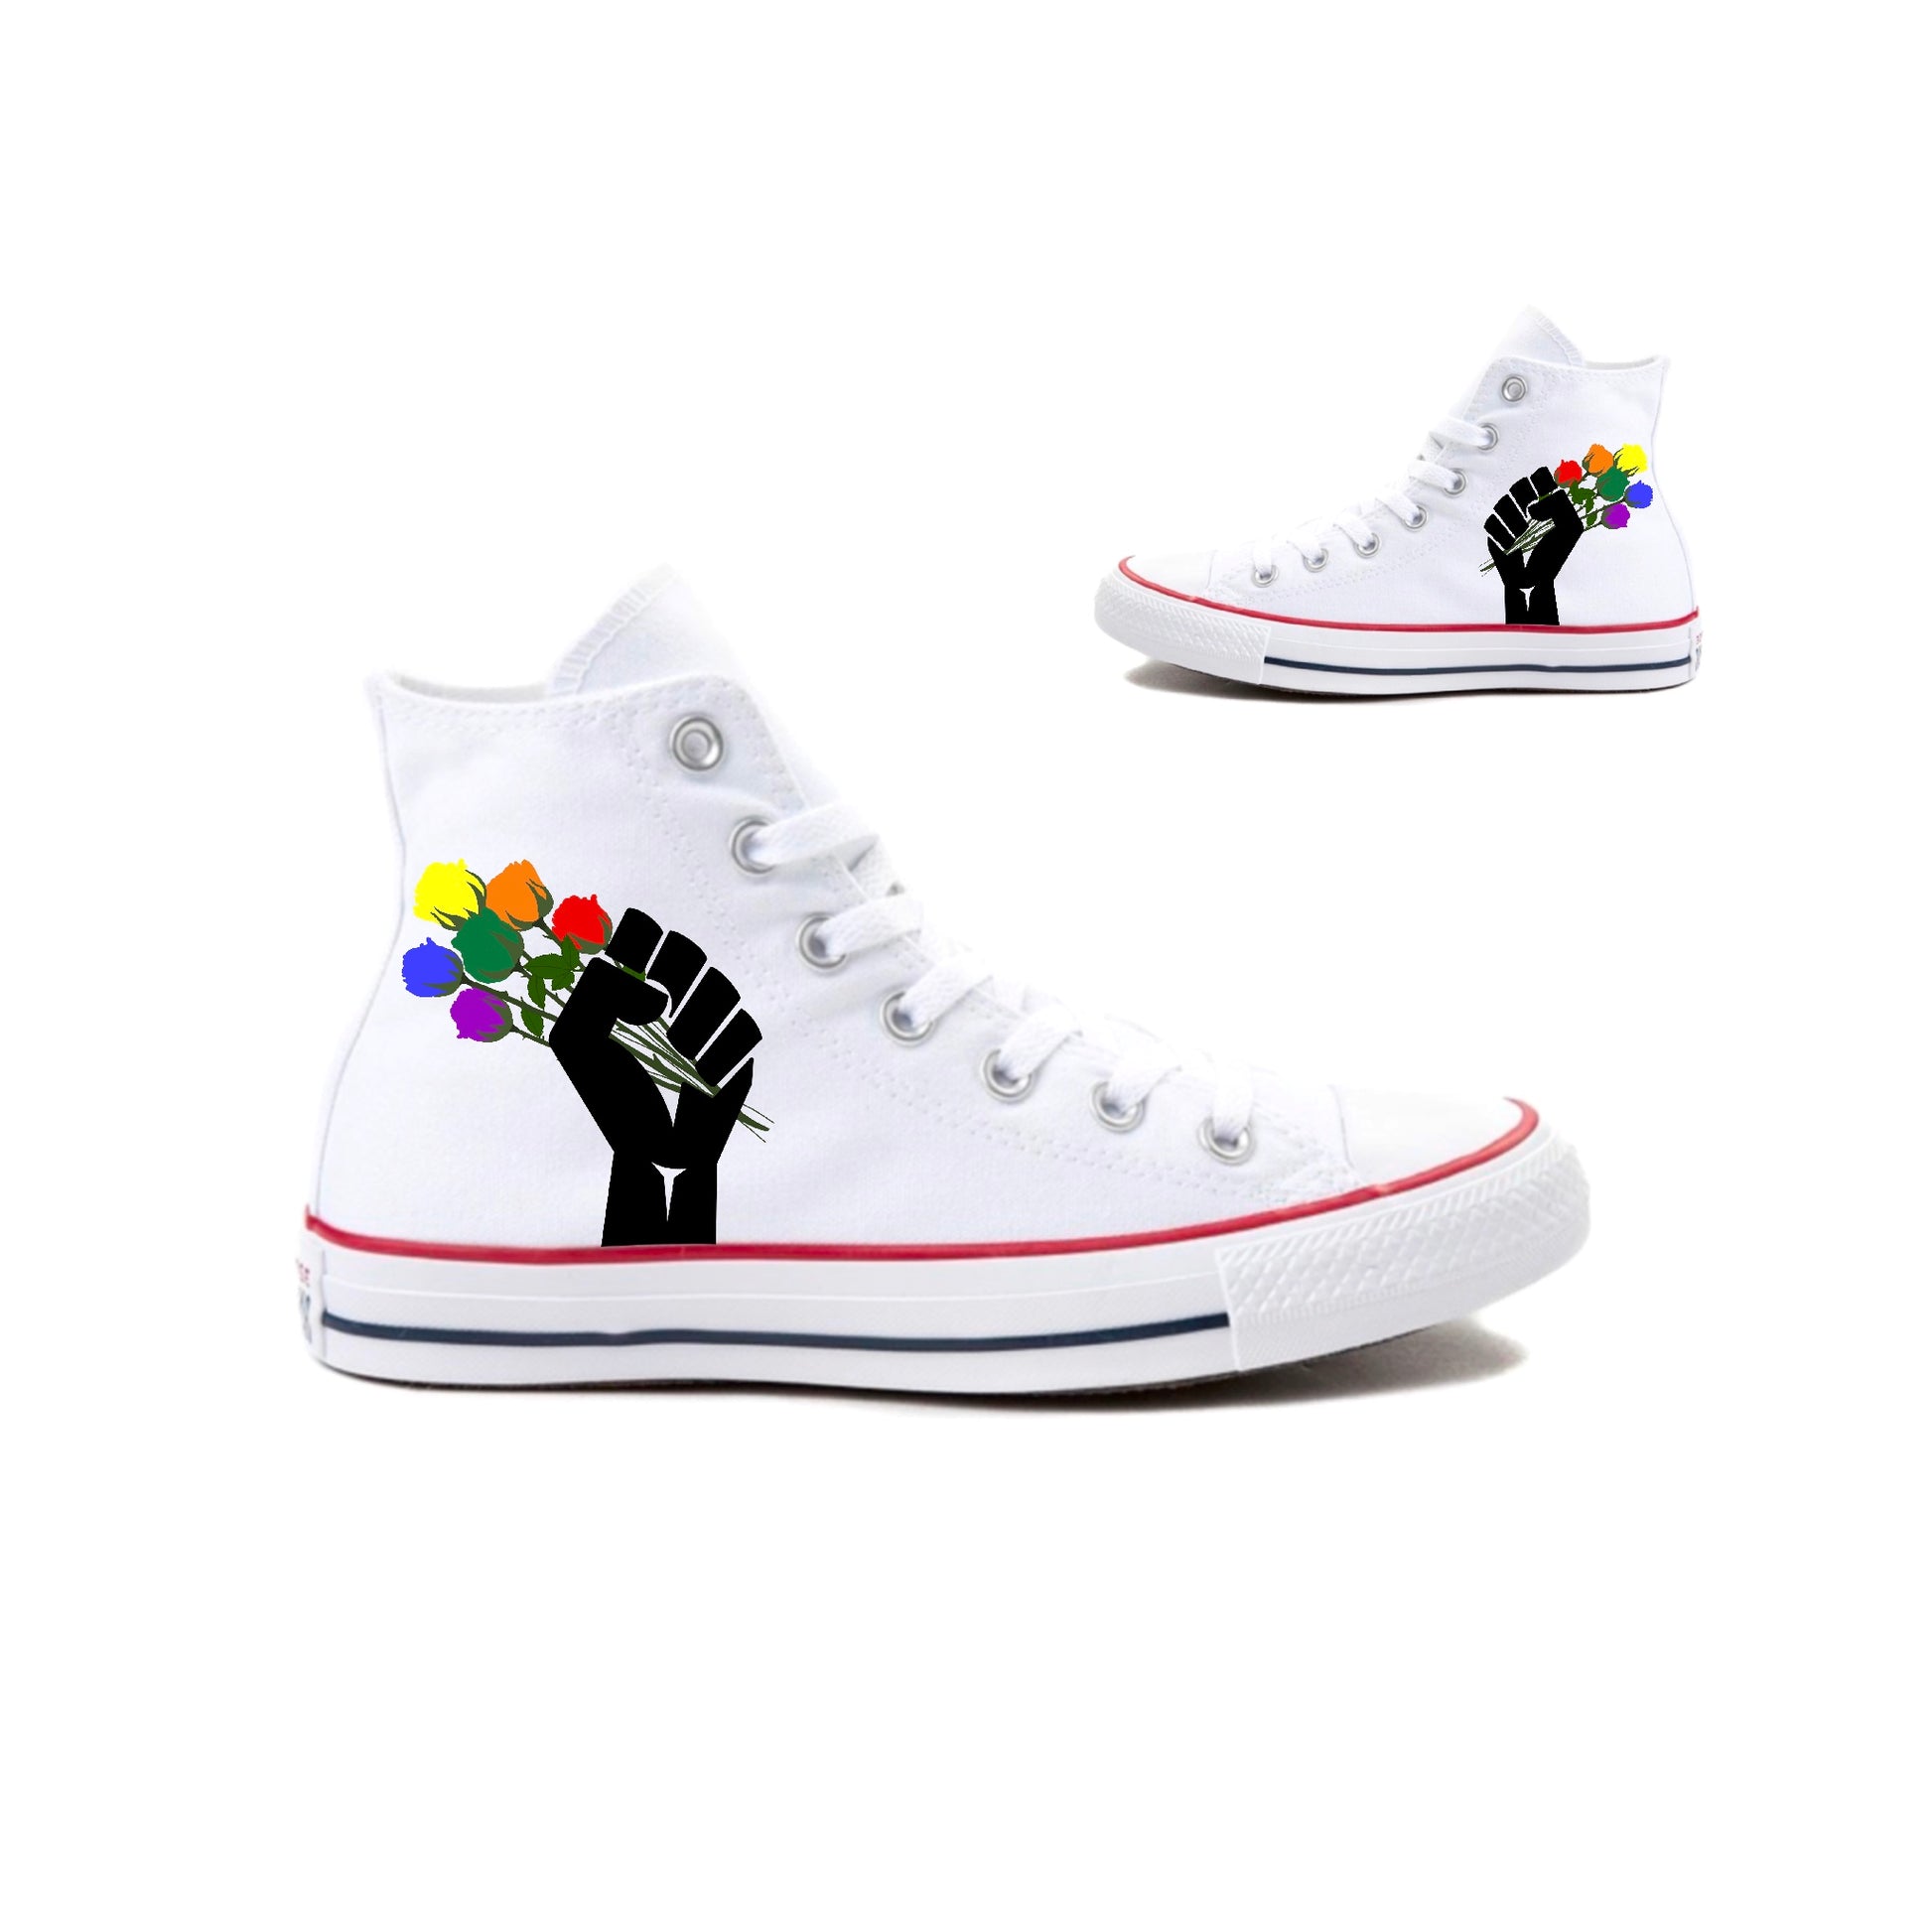 BLM & LGBTQ Bouquet - Custom High Tops for Summer, Pride, Parades, Marches, Picnics - Custom Converse Shoes